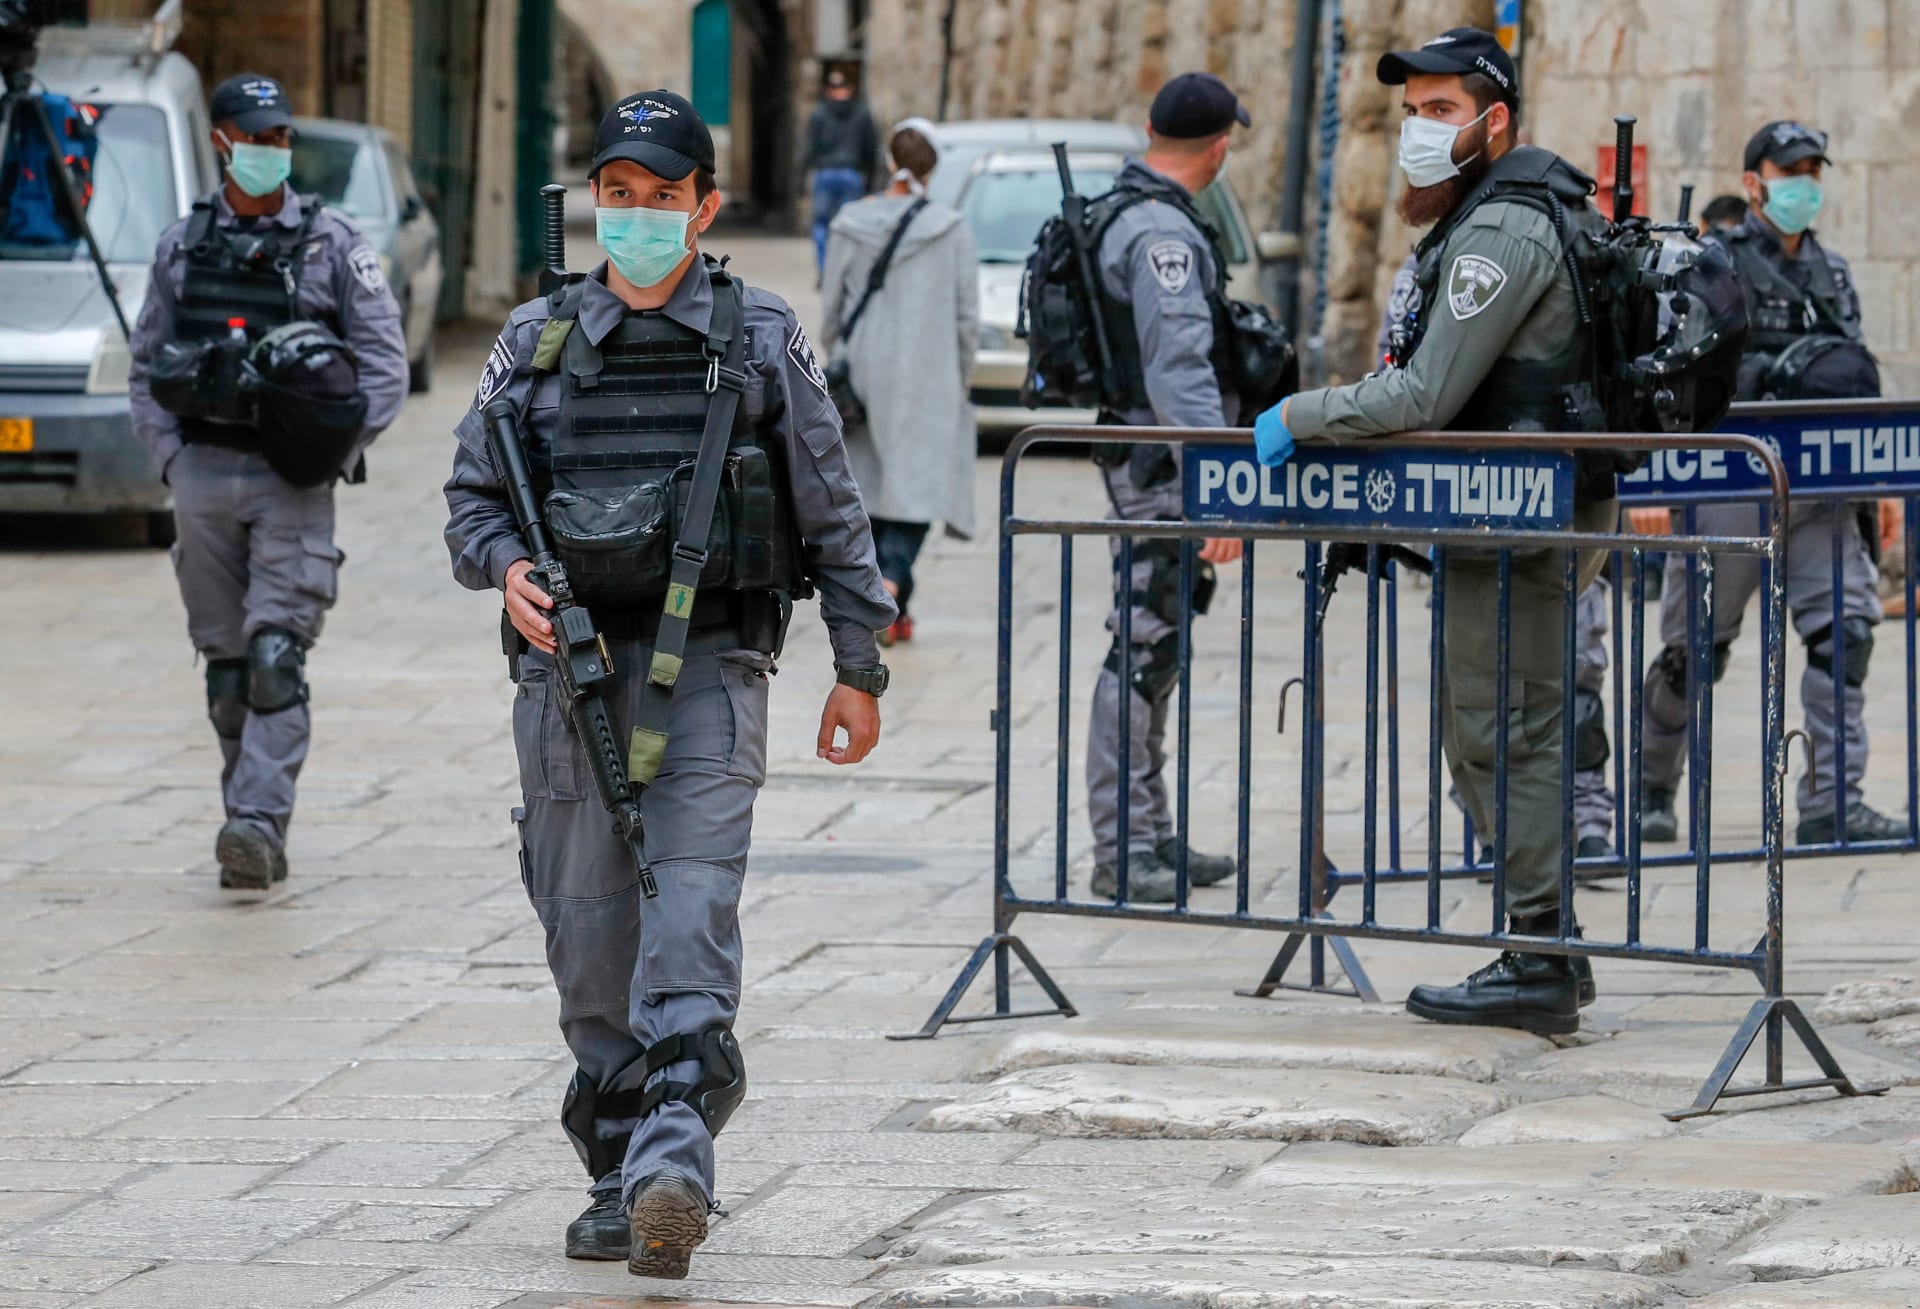 قوات الأمن الإسرائيلية في مدينة القدس ترتدي أقنعة طبية واقية بعد تفشي فيروس كورونا